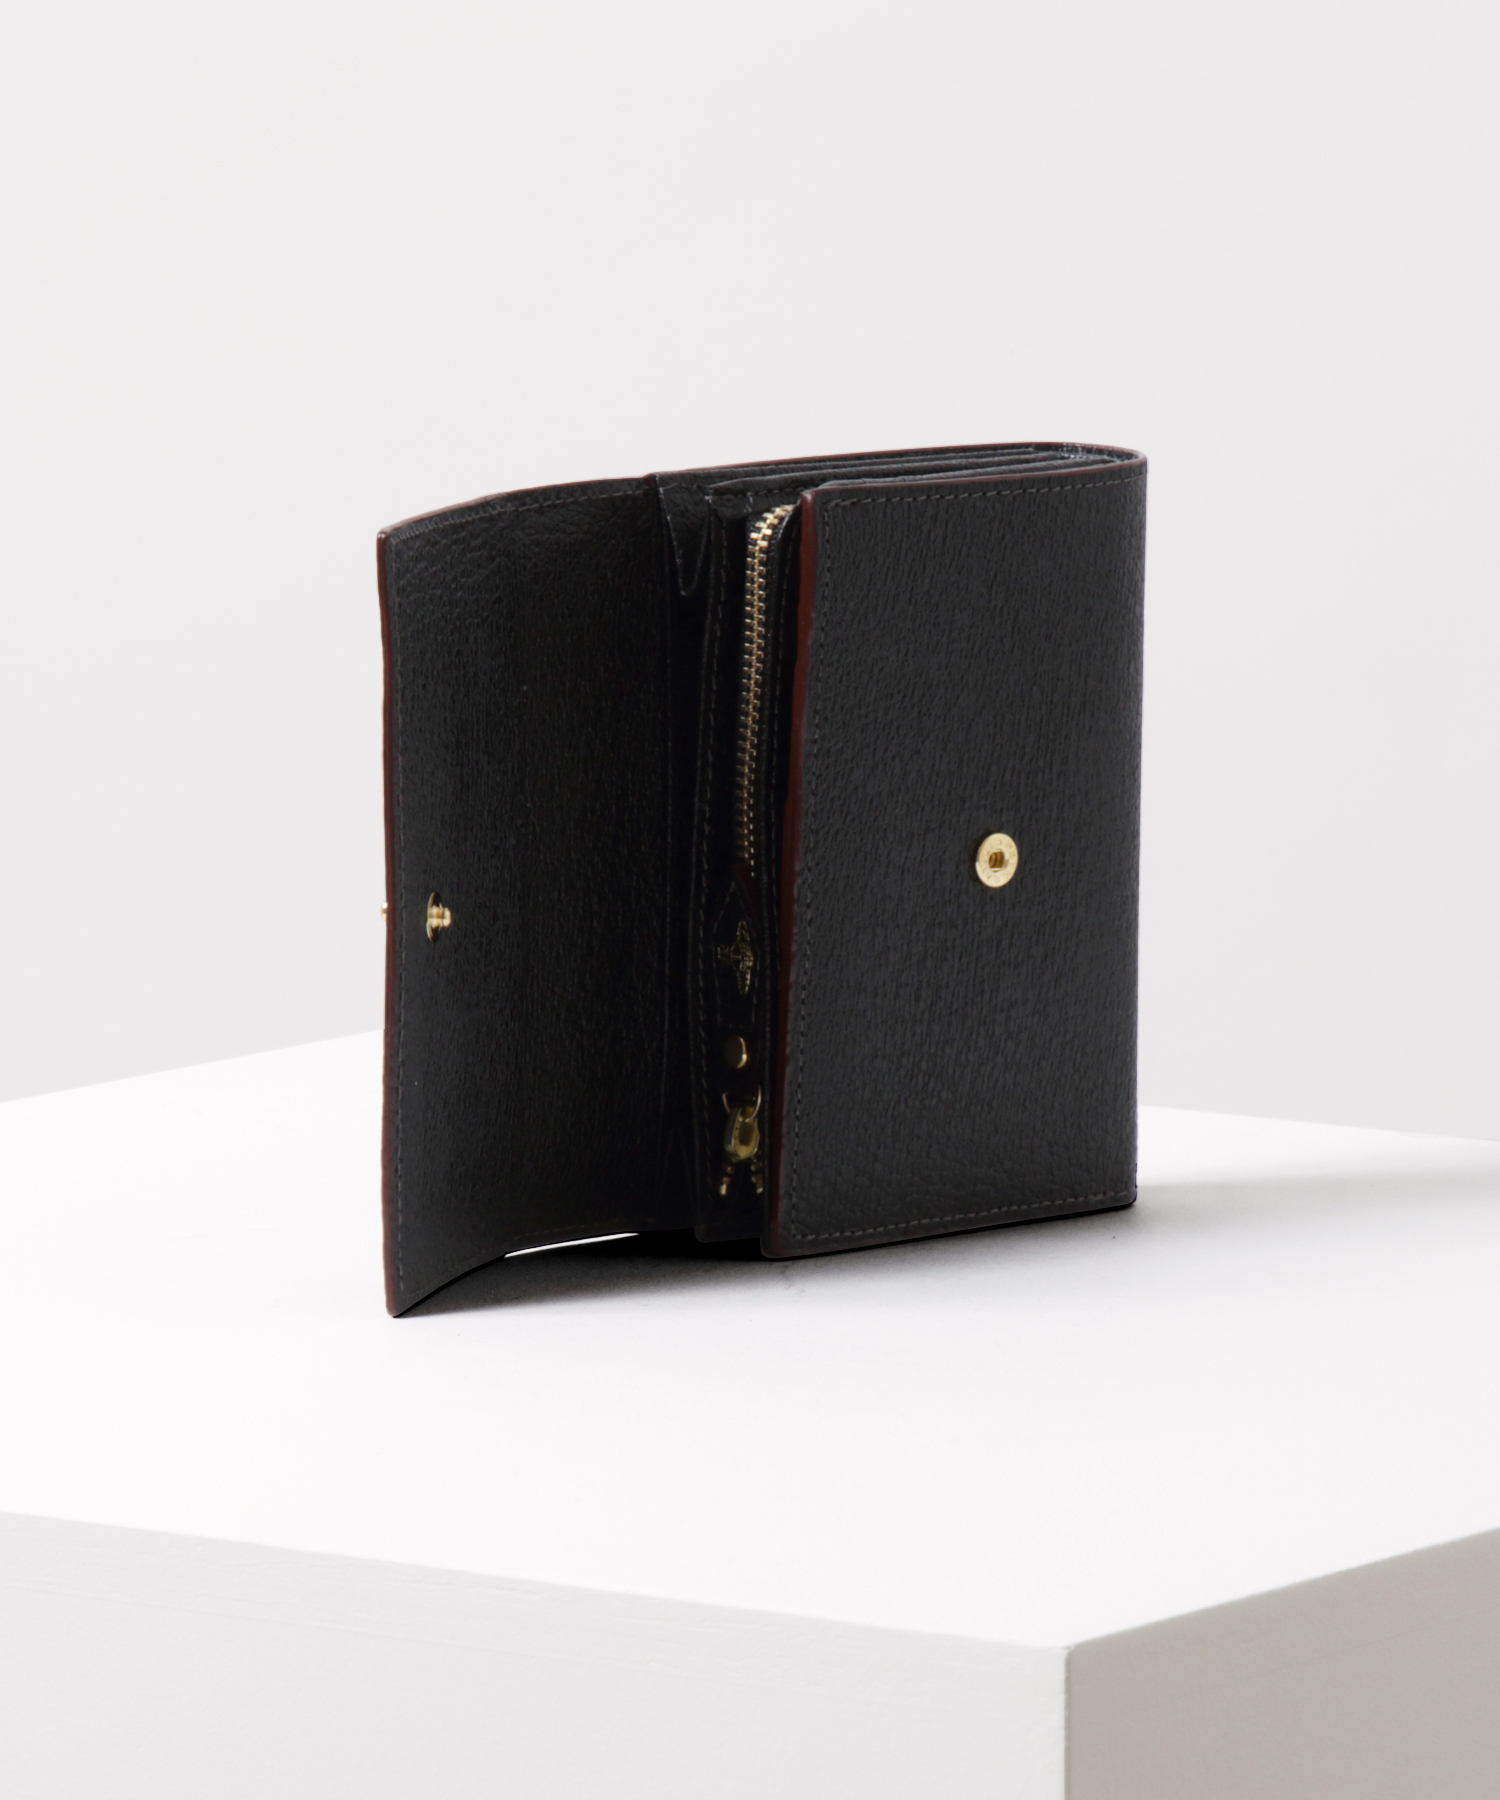 ヴィヴィアンウエストウッド Vivienne Westwood 三つ折り財布 レザー ブラック ユニセックス 送料無料 55431g